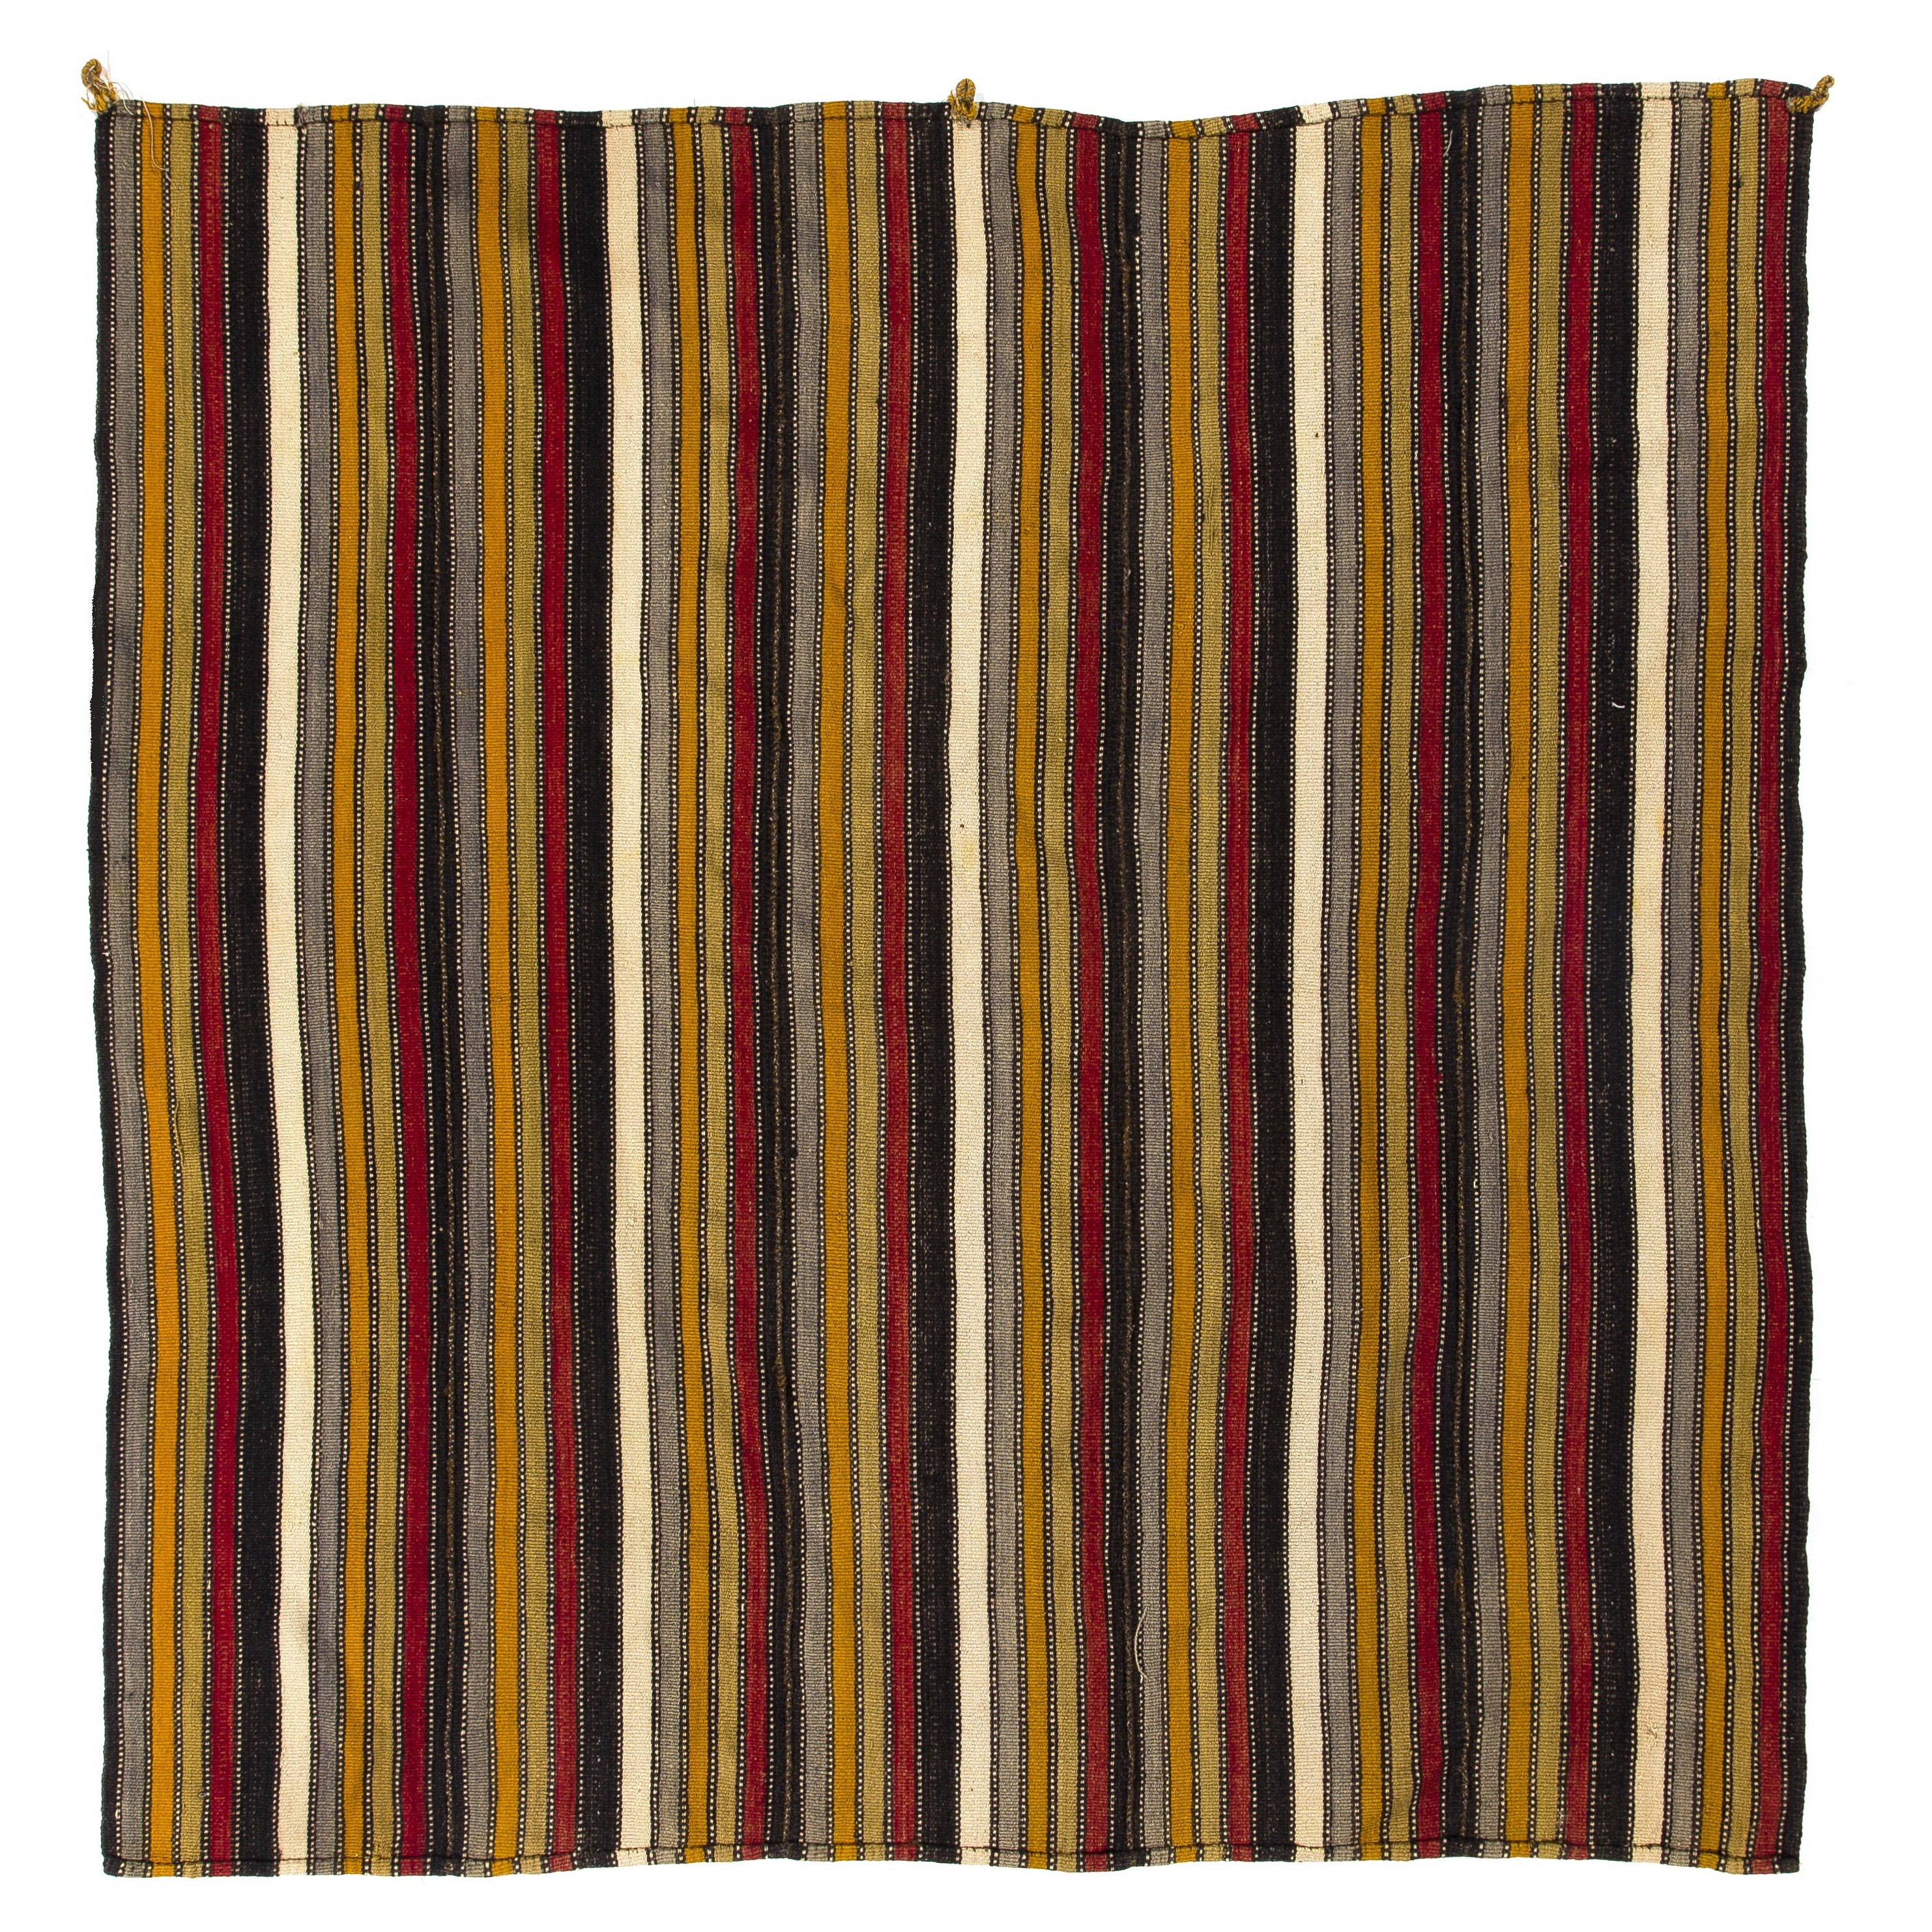 Tapis Kilim vintage rayé tissé à la main de 5,7 x 5,9 pieds, revêtement de sol en laine tissé à plat